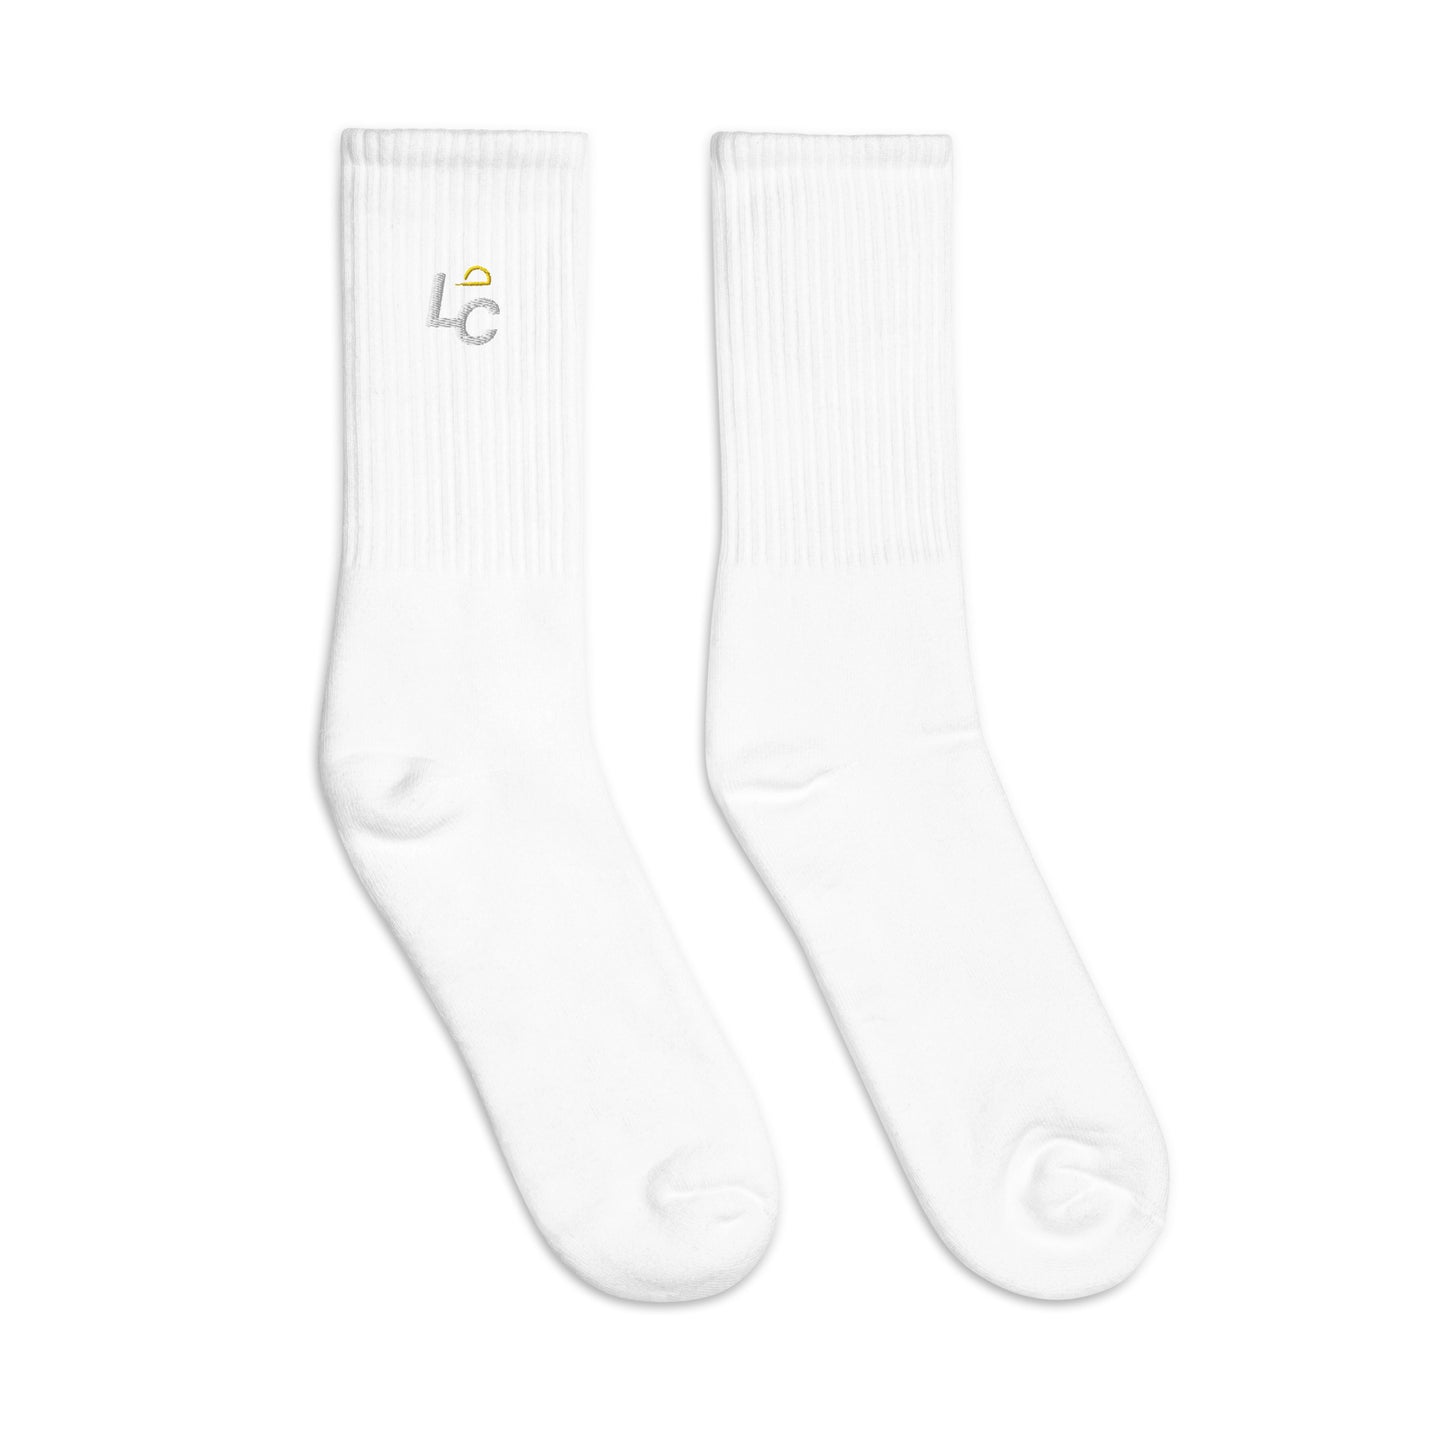 Luxhatsco "abbreviation" socks (Unisex)